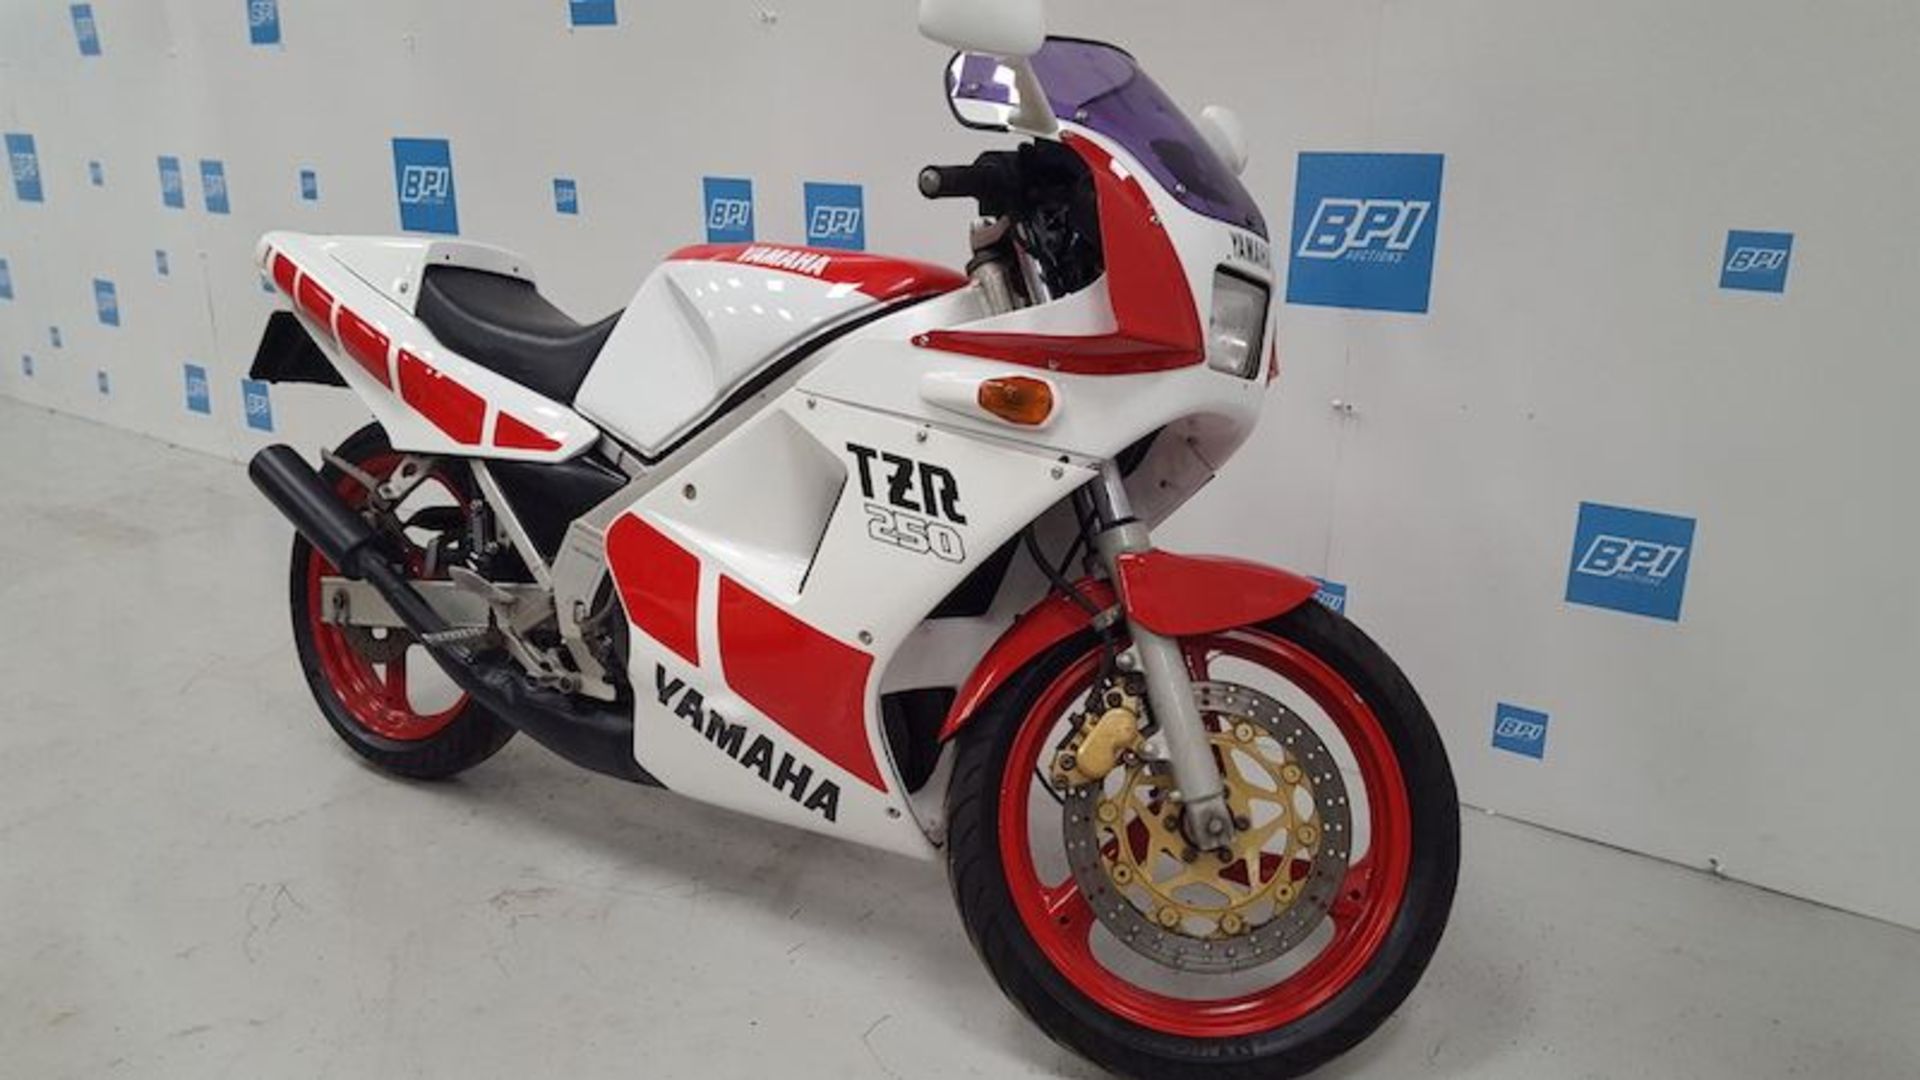 1989 Yamaha TZR250 - Image 2 of 7